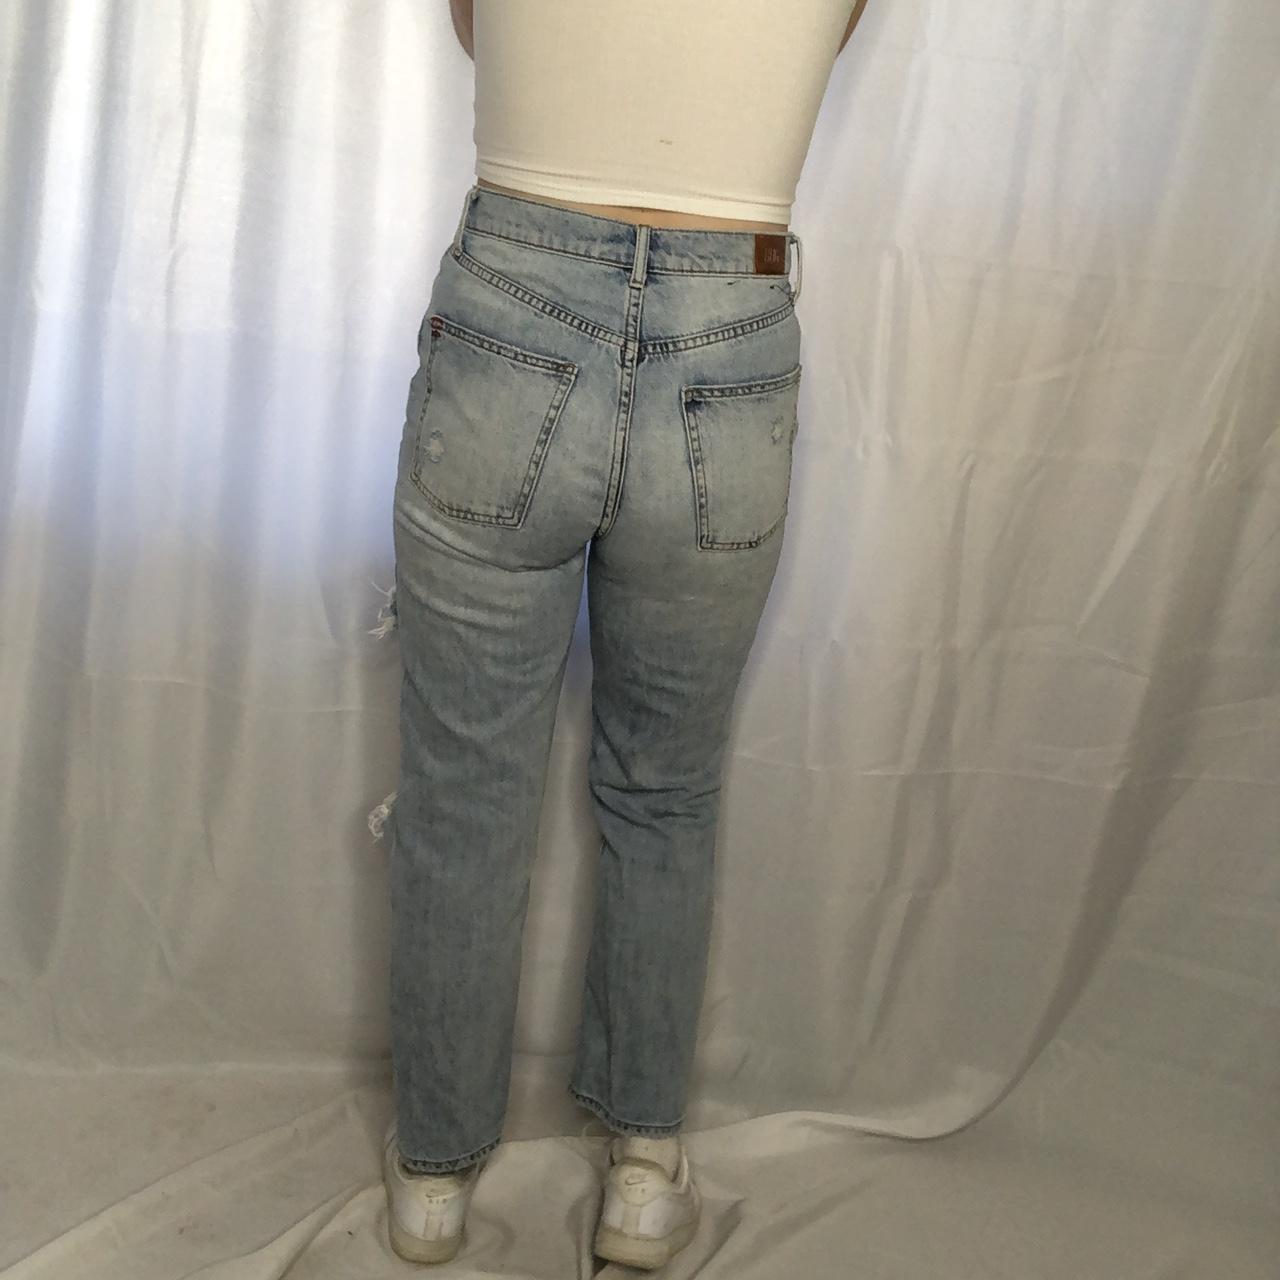 Versus Women's Jeans (4)